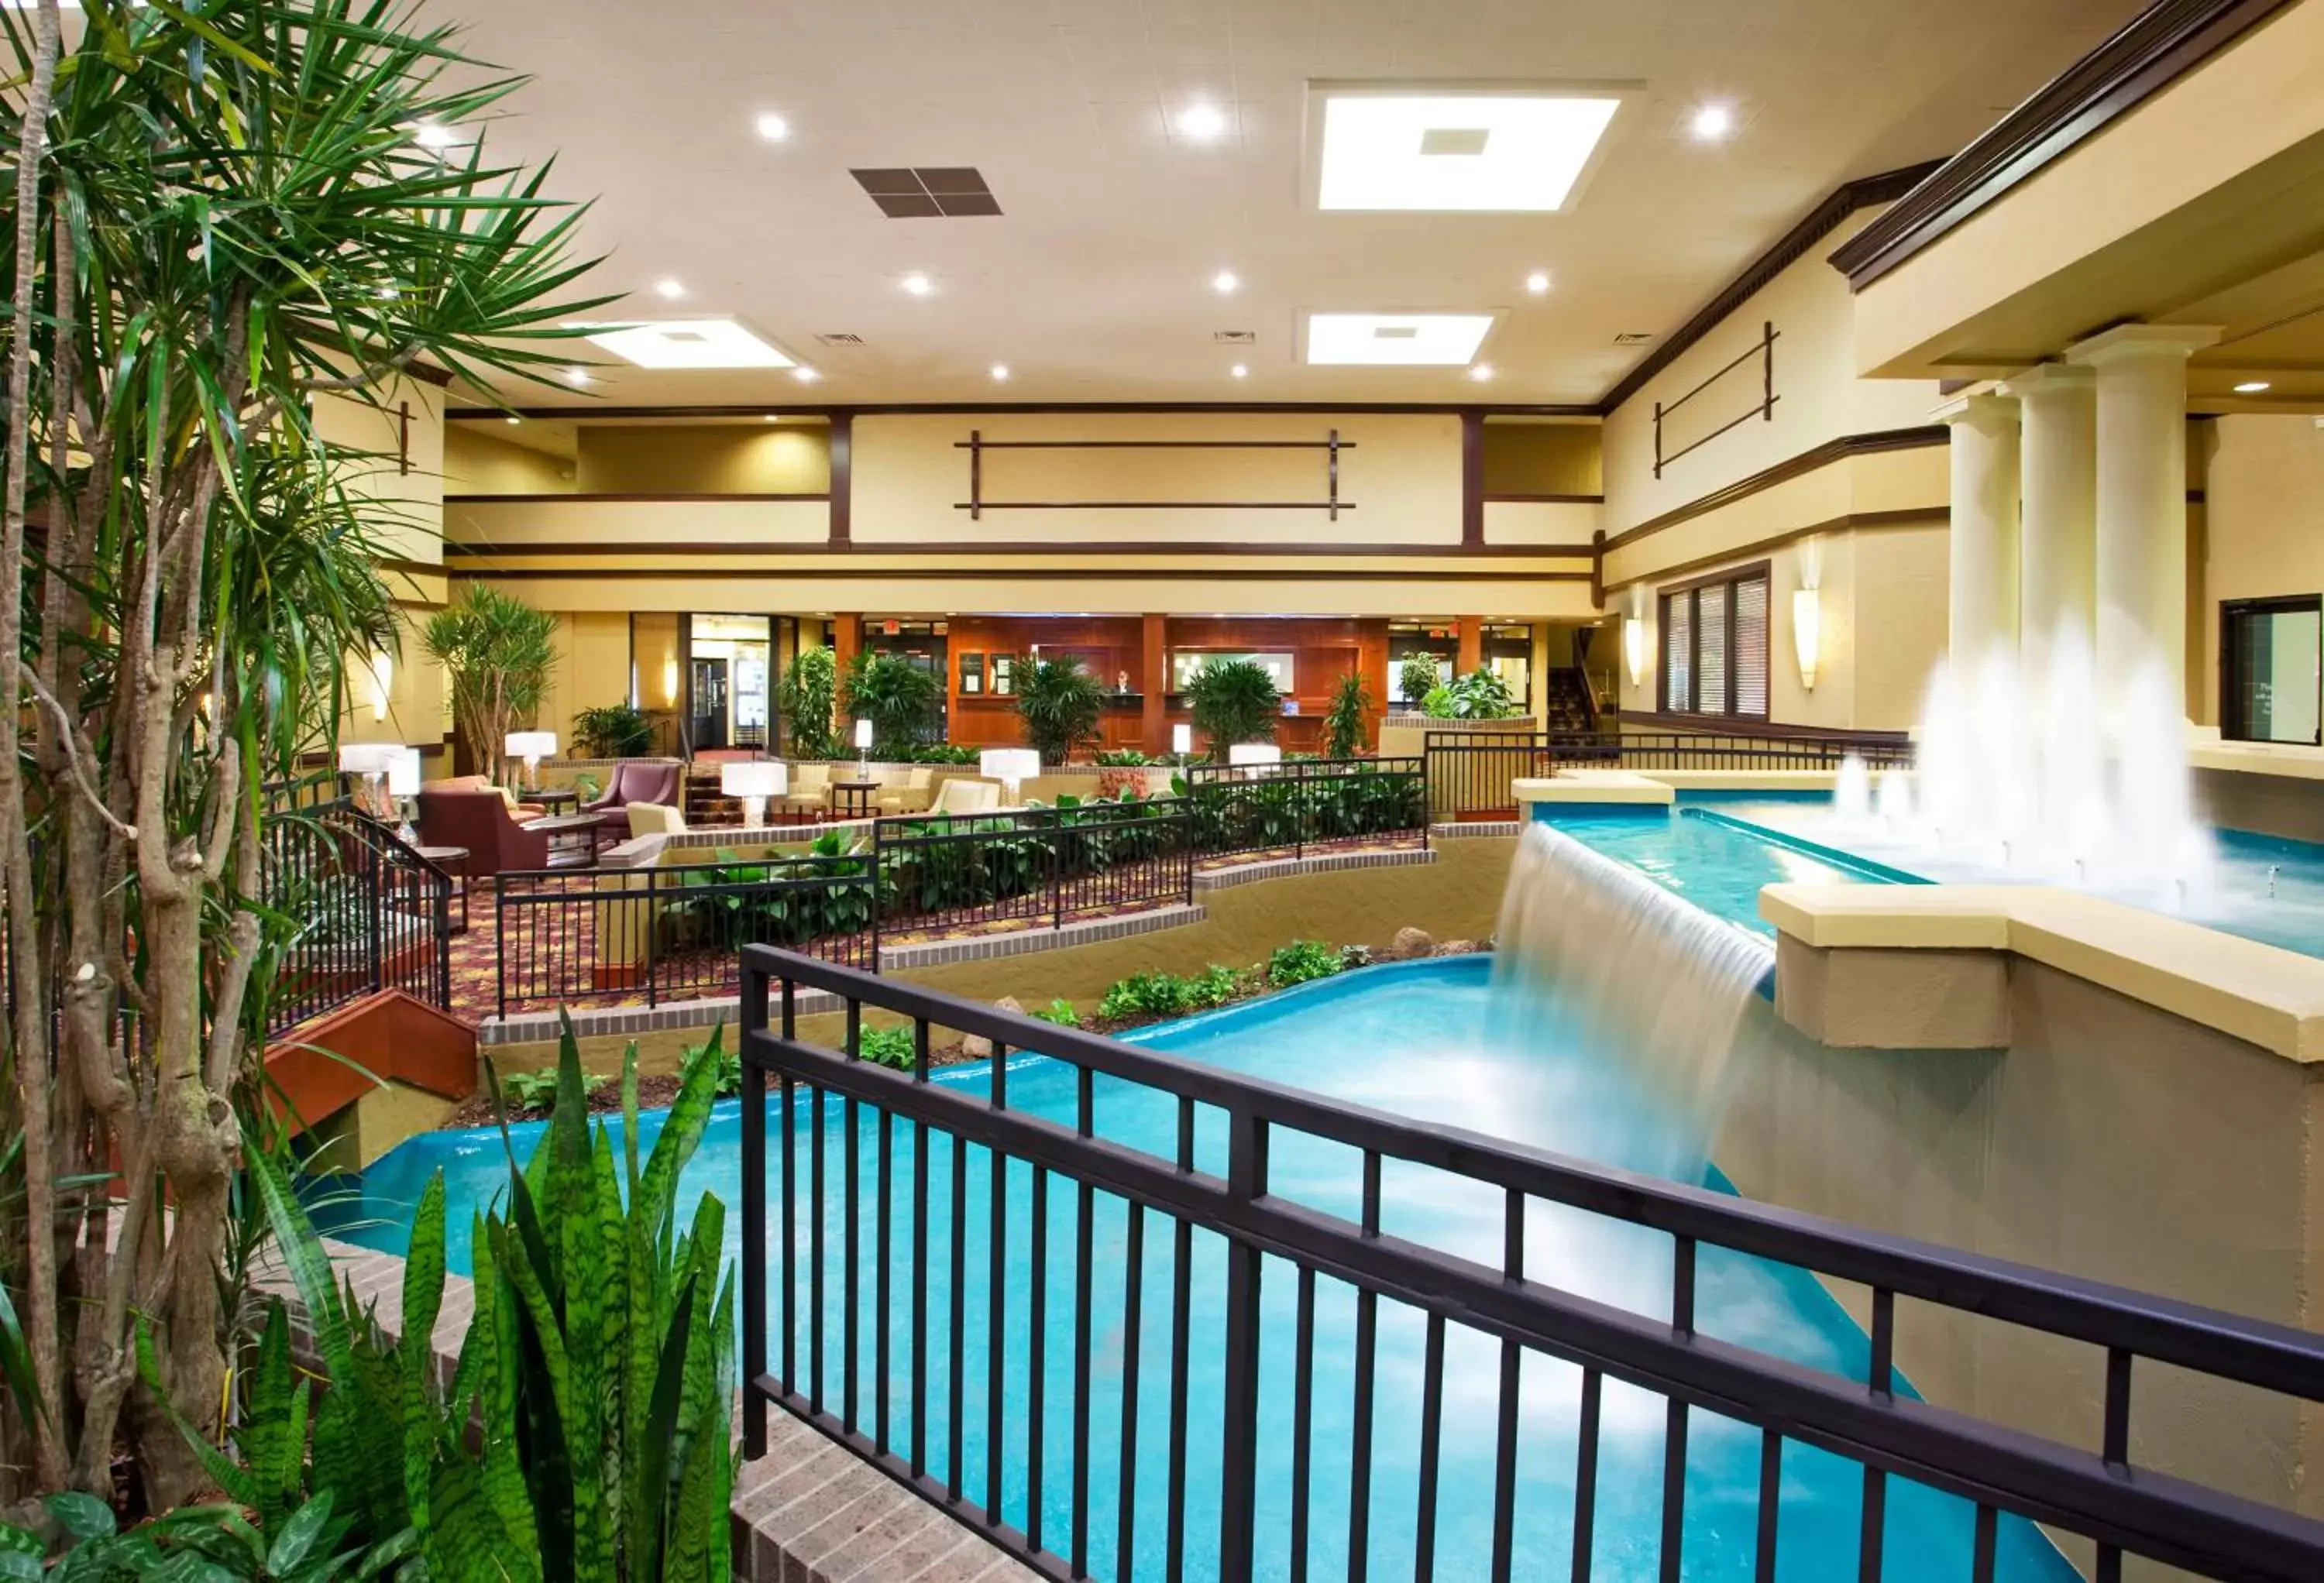 Property building, Pool View in Holiday Inn Cincinnati-Eastgate, an IHG Hotel